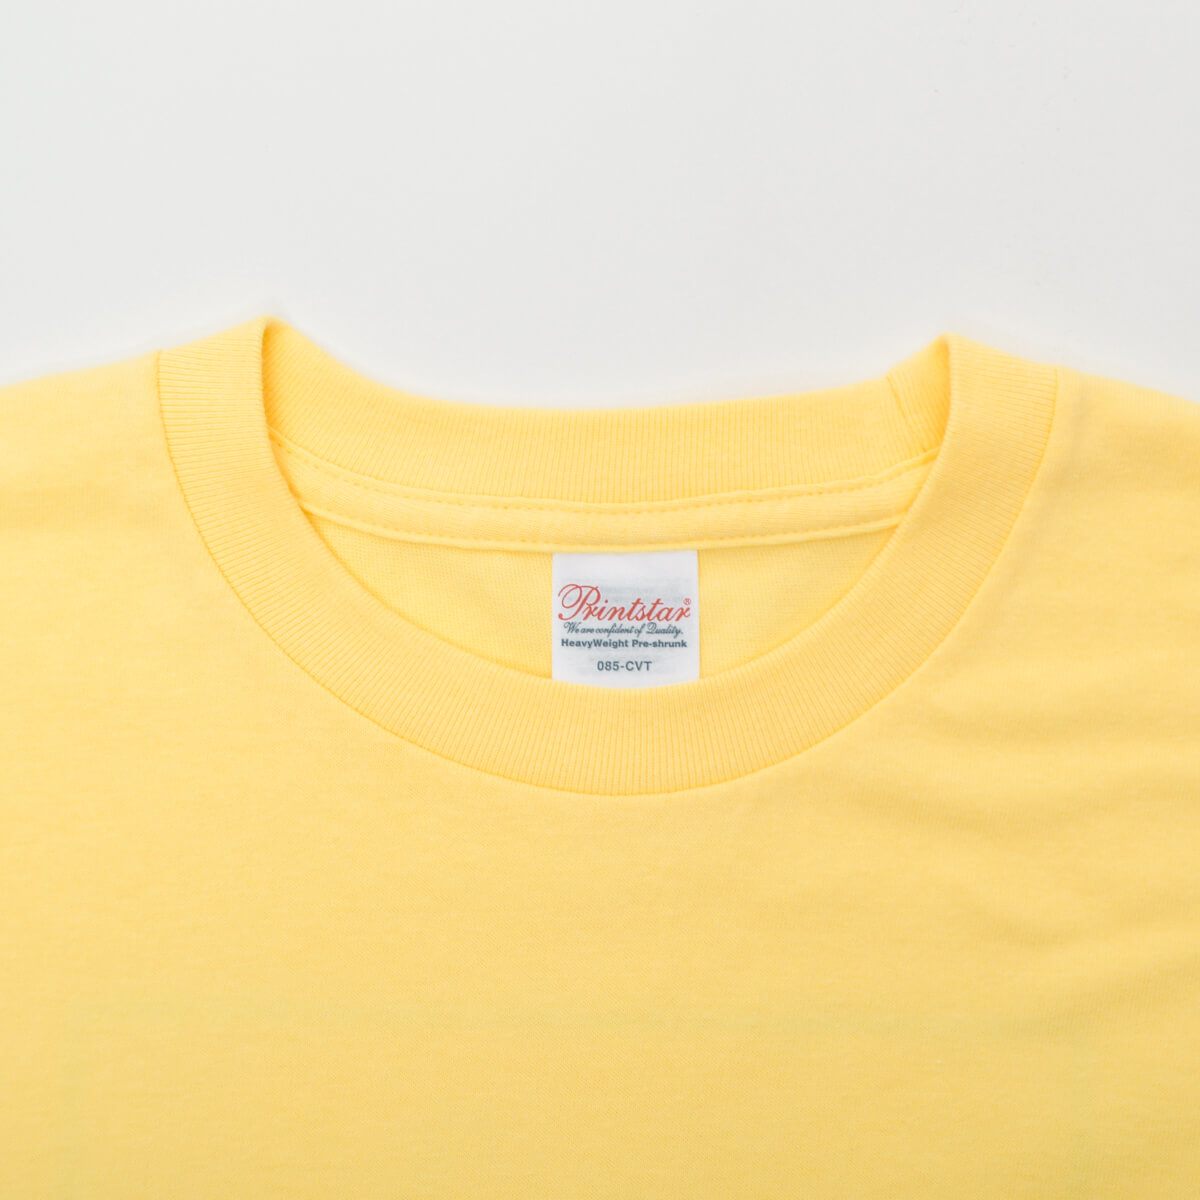 Tシャツ「ちこまる」ちこまるビクビク/レモン